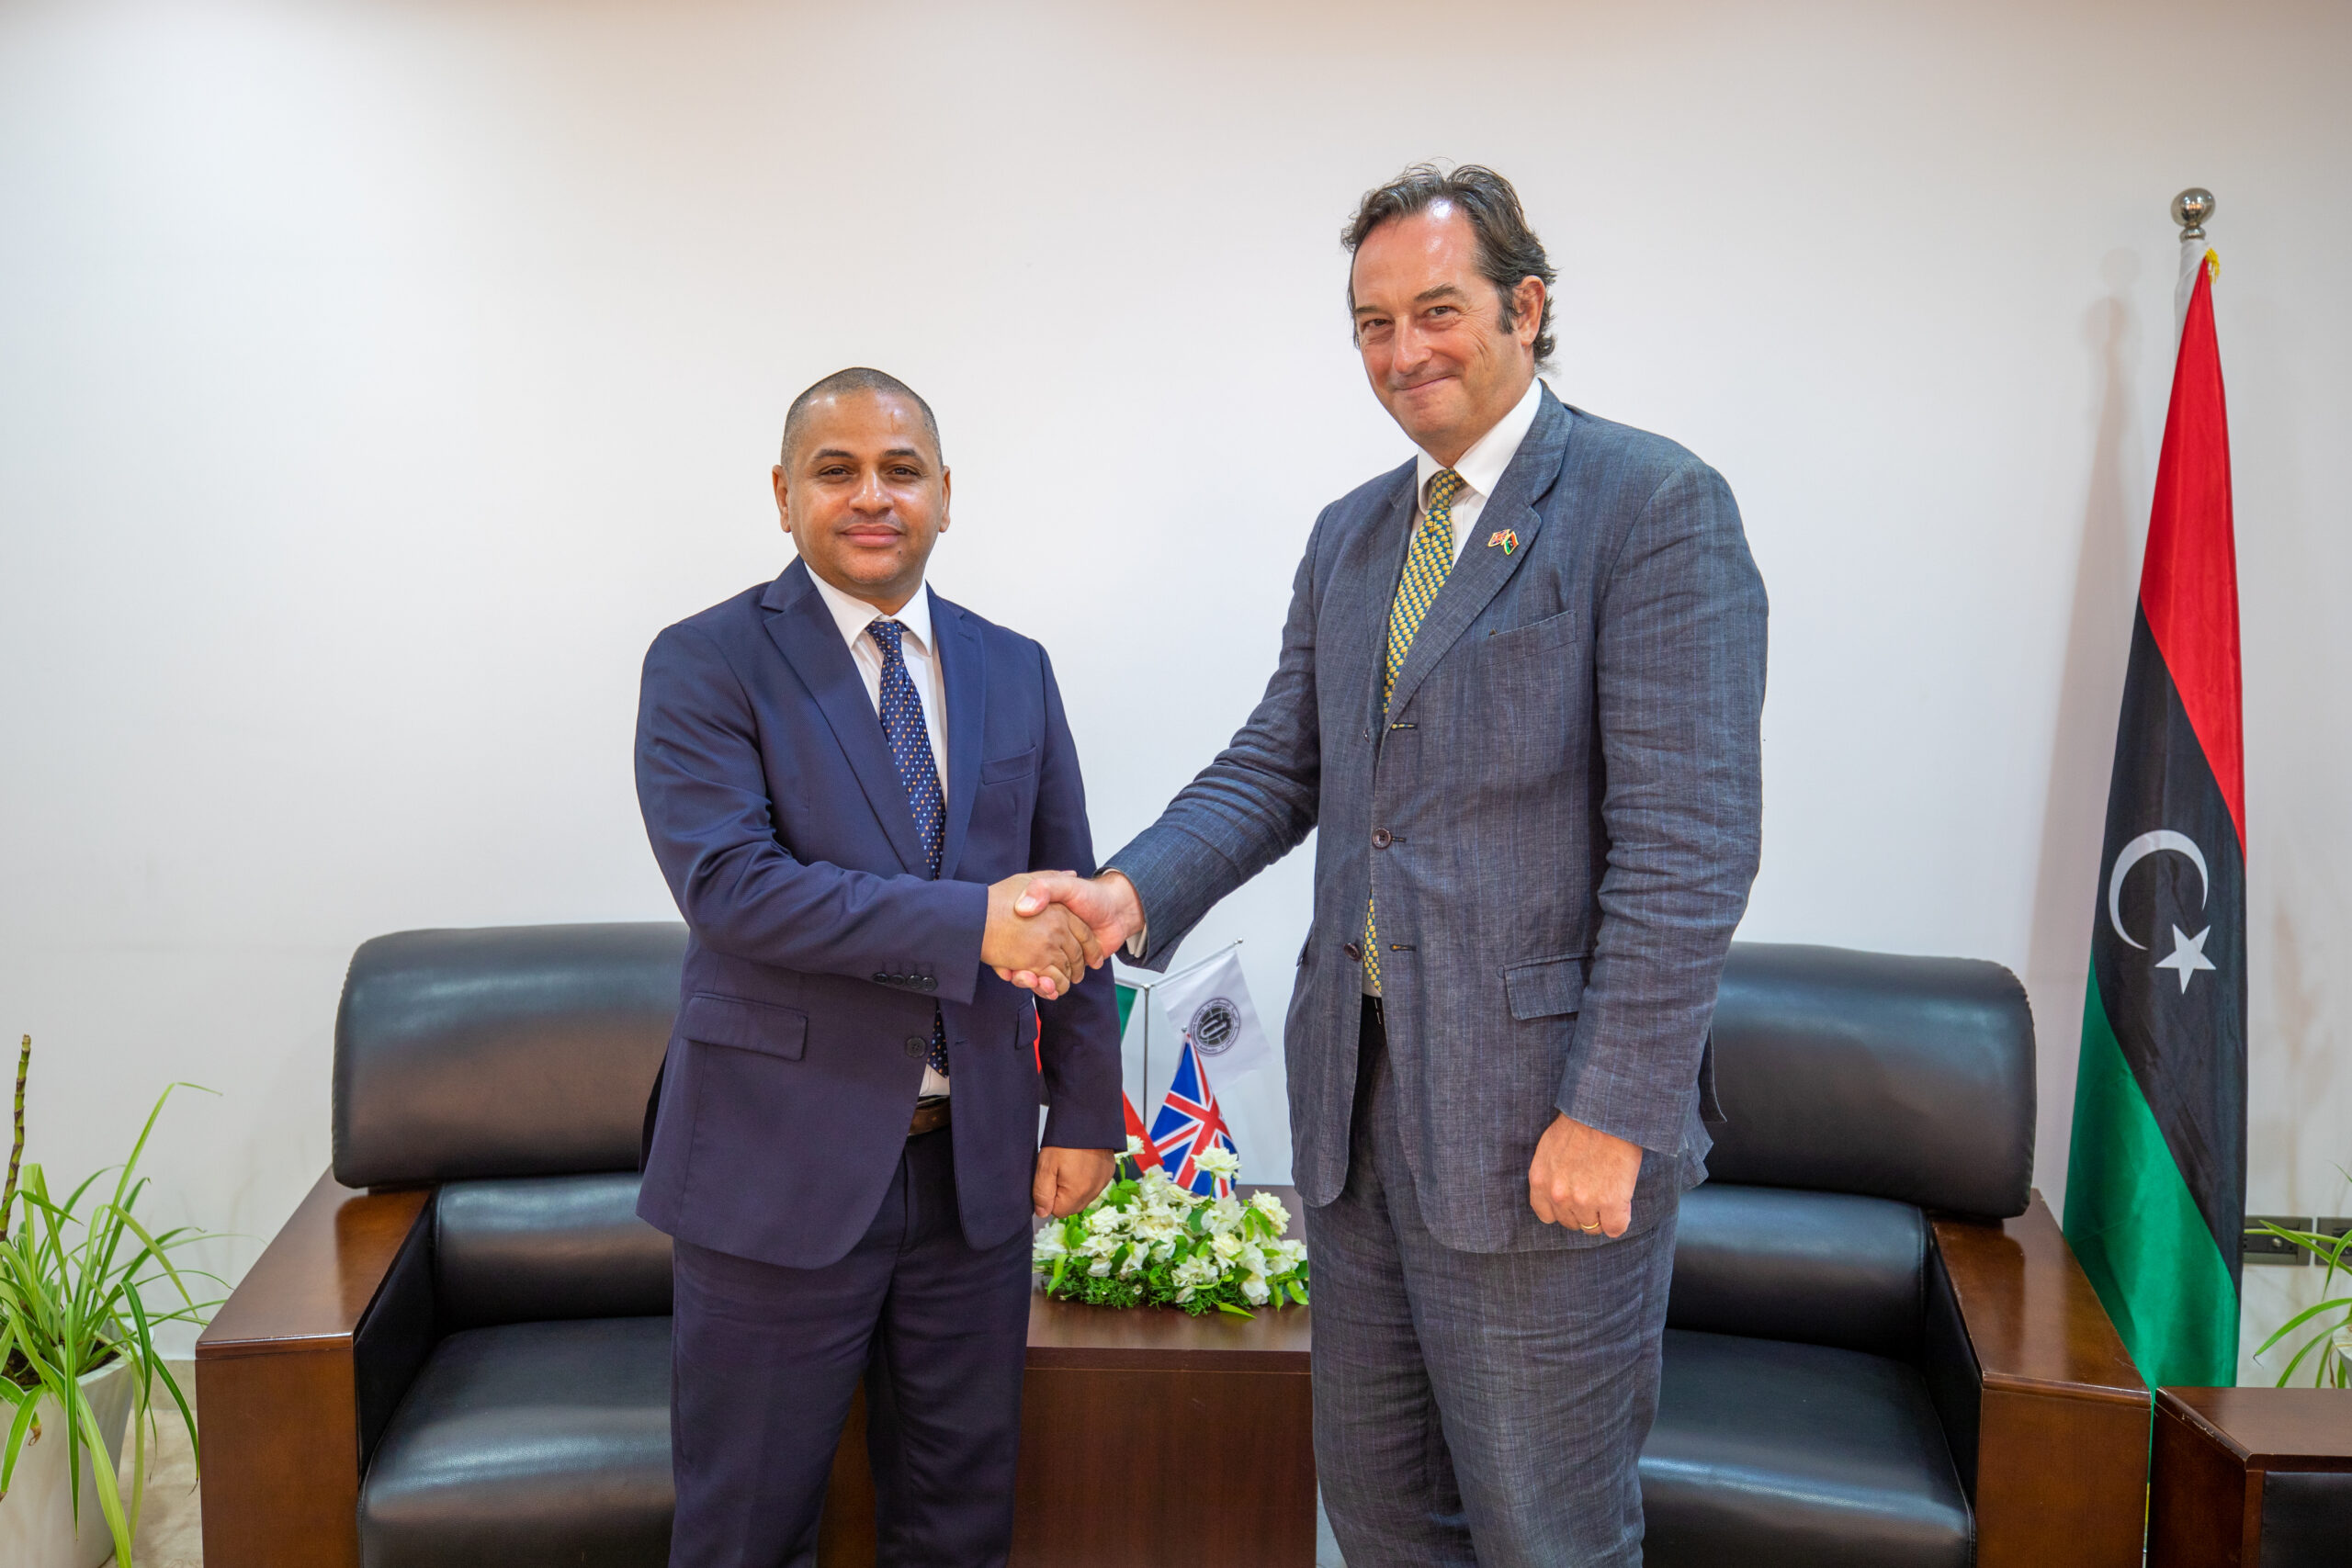 عقد رئيس مجلس إدارة المؤسسة الليبية للاستثمار والمدير التنفيذي د. علي محمود اليوم الثلاثاء الموافق 17/8/2021 اجتماعا مع سعادة السفير البريطاني لدى ليبيا “نيكولاس هوبتون”.